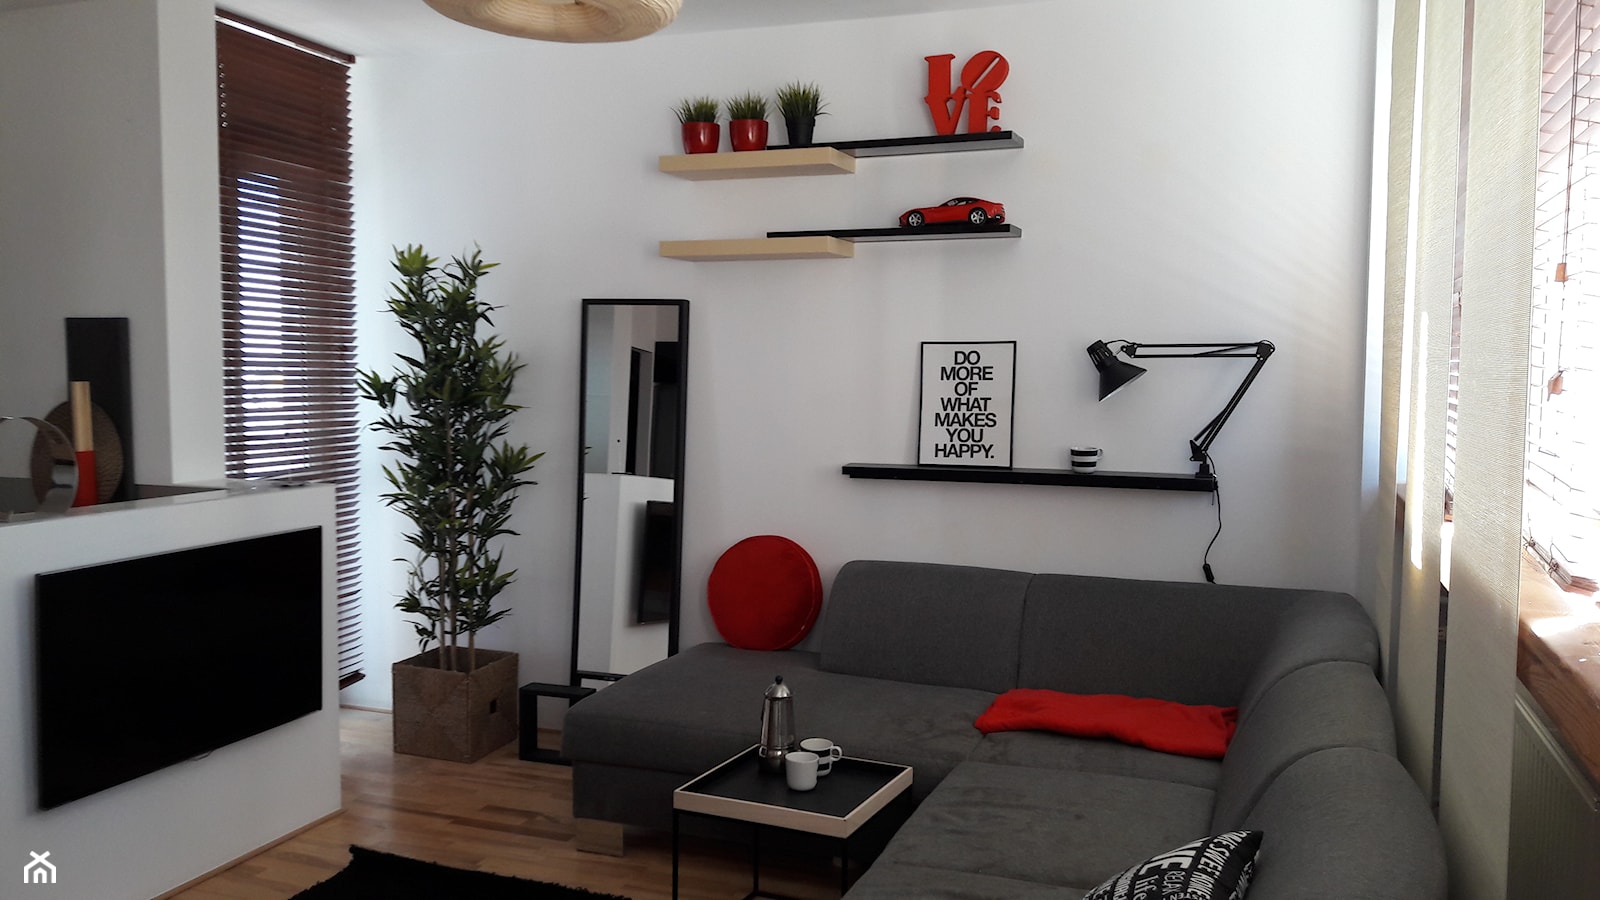 szary narożnik w małym salonie z białymi ścianami uzupełniony czerwonymi dekoracyjami - zdjęcie od Atelier 37 | architektura & projektowanie wnętrz - Homebook